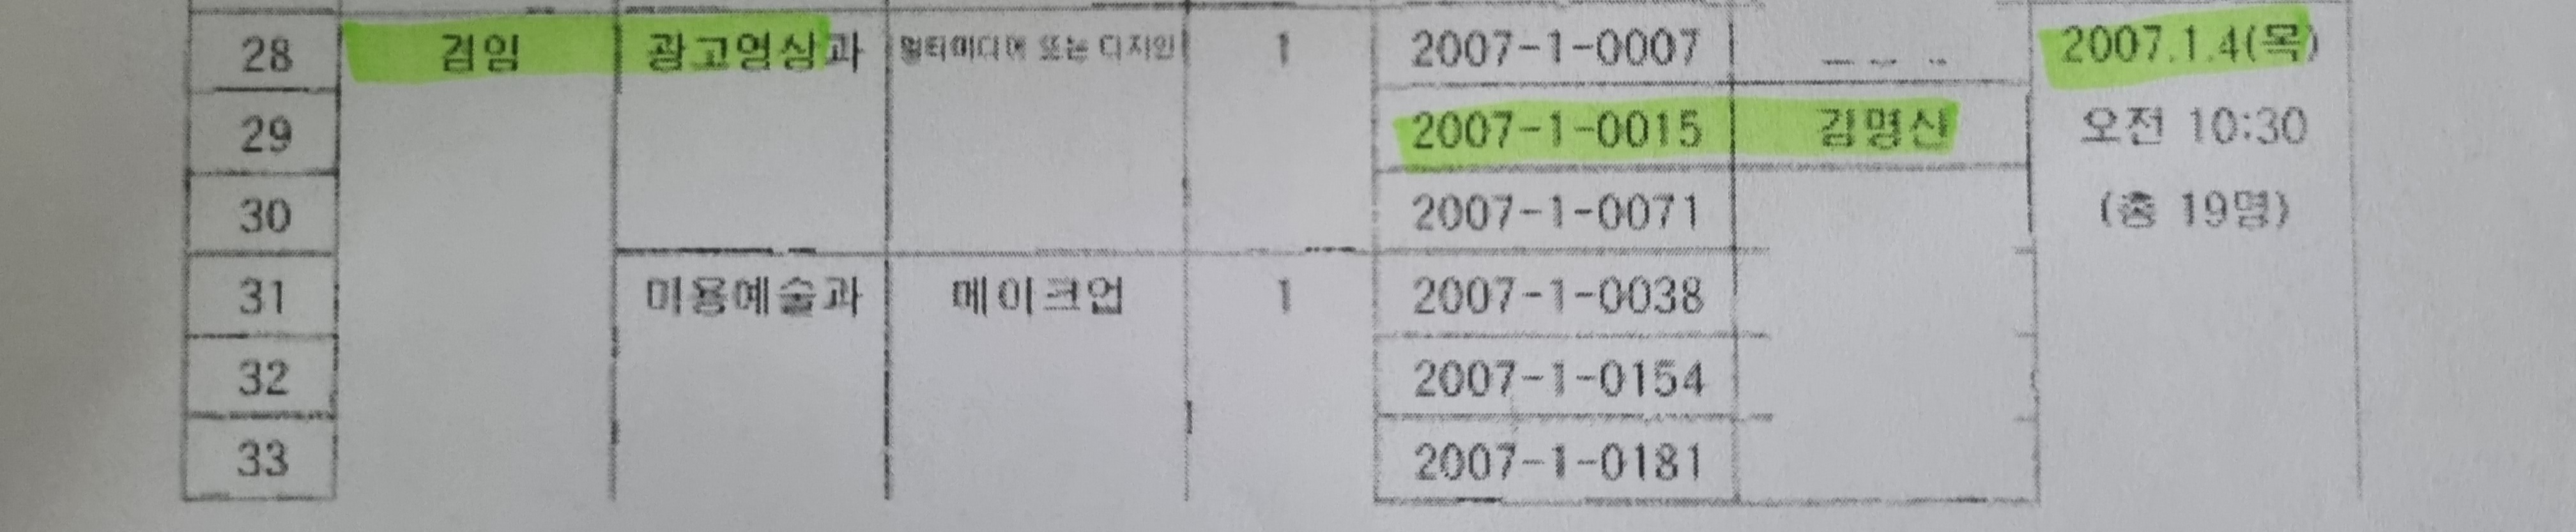 2007년 1월 4일 김명신(개명 전 이름)을 포함해 3명이 면접을 치렀음을 보여주는 수원여대 내부 문서